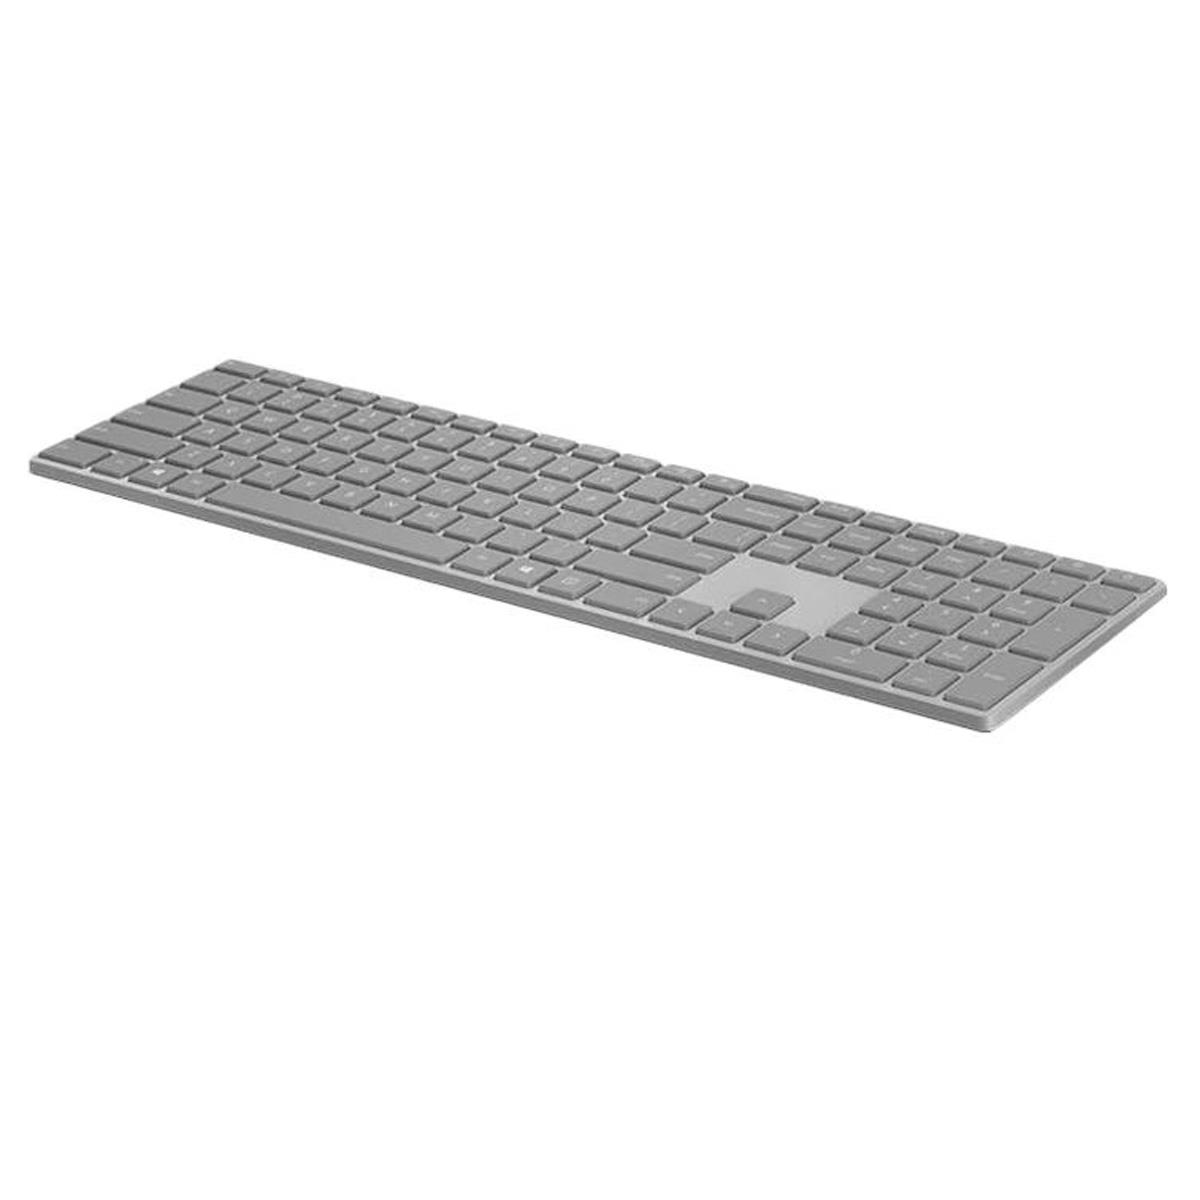 Image of Microsoft Surface Wireless Keyboard